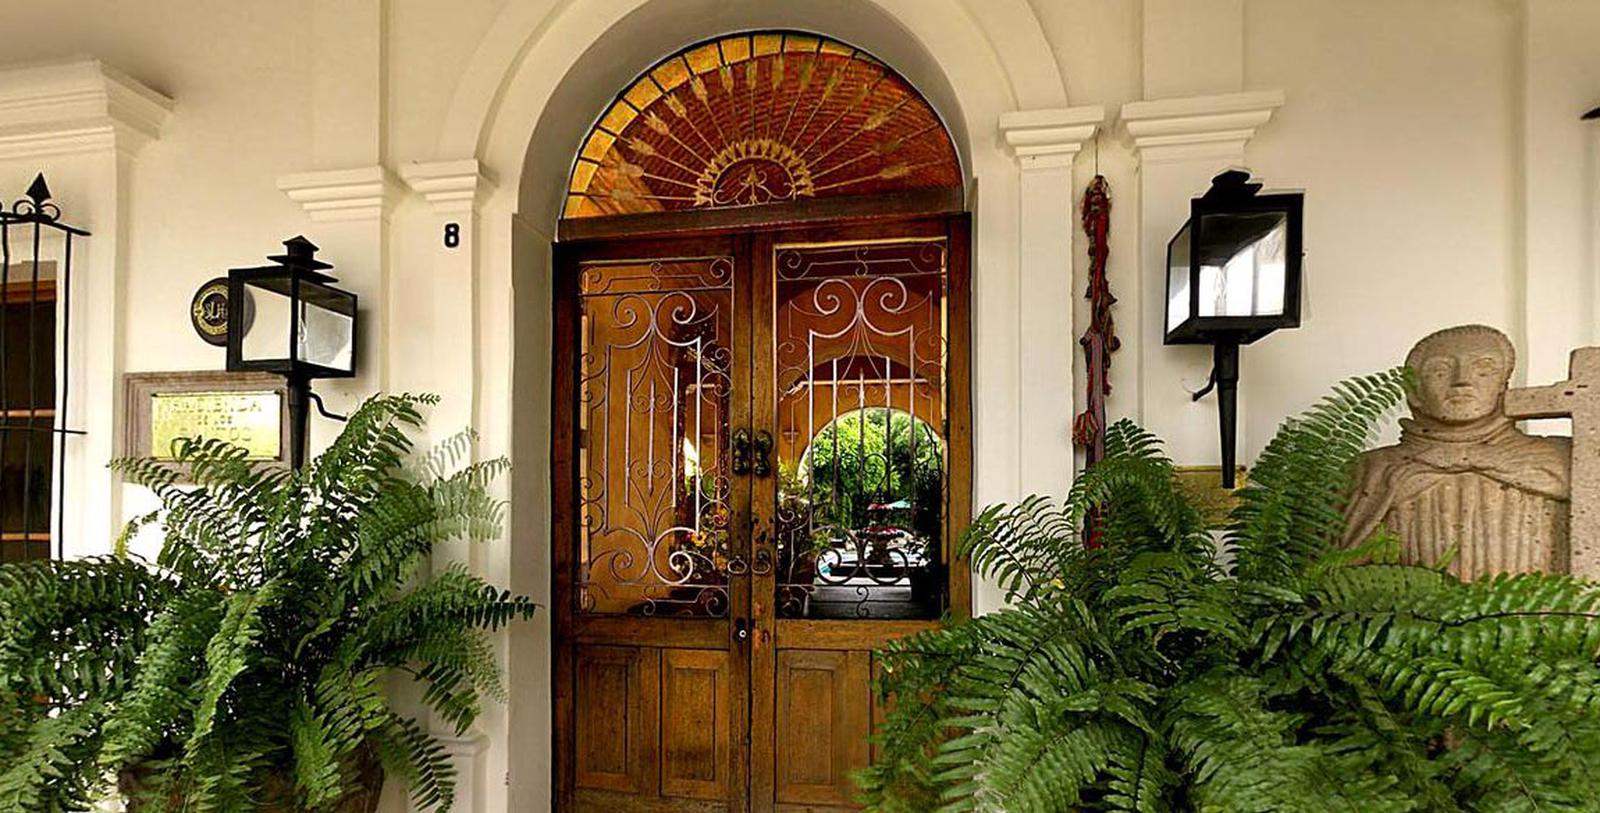 Image of Main Entrance Exterior, Hacienda de los Santos, Alamos, Mexico, 1600s, Member of Historic Hotels Worldwide, Overview